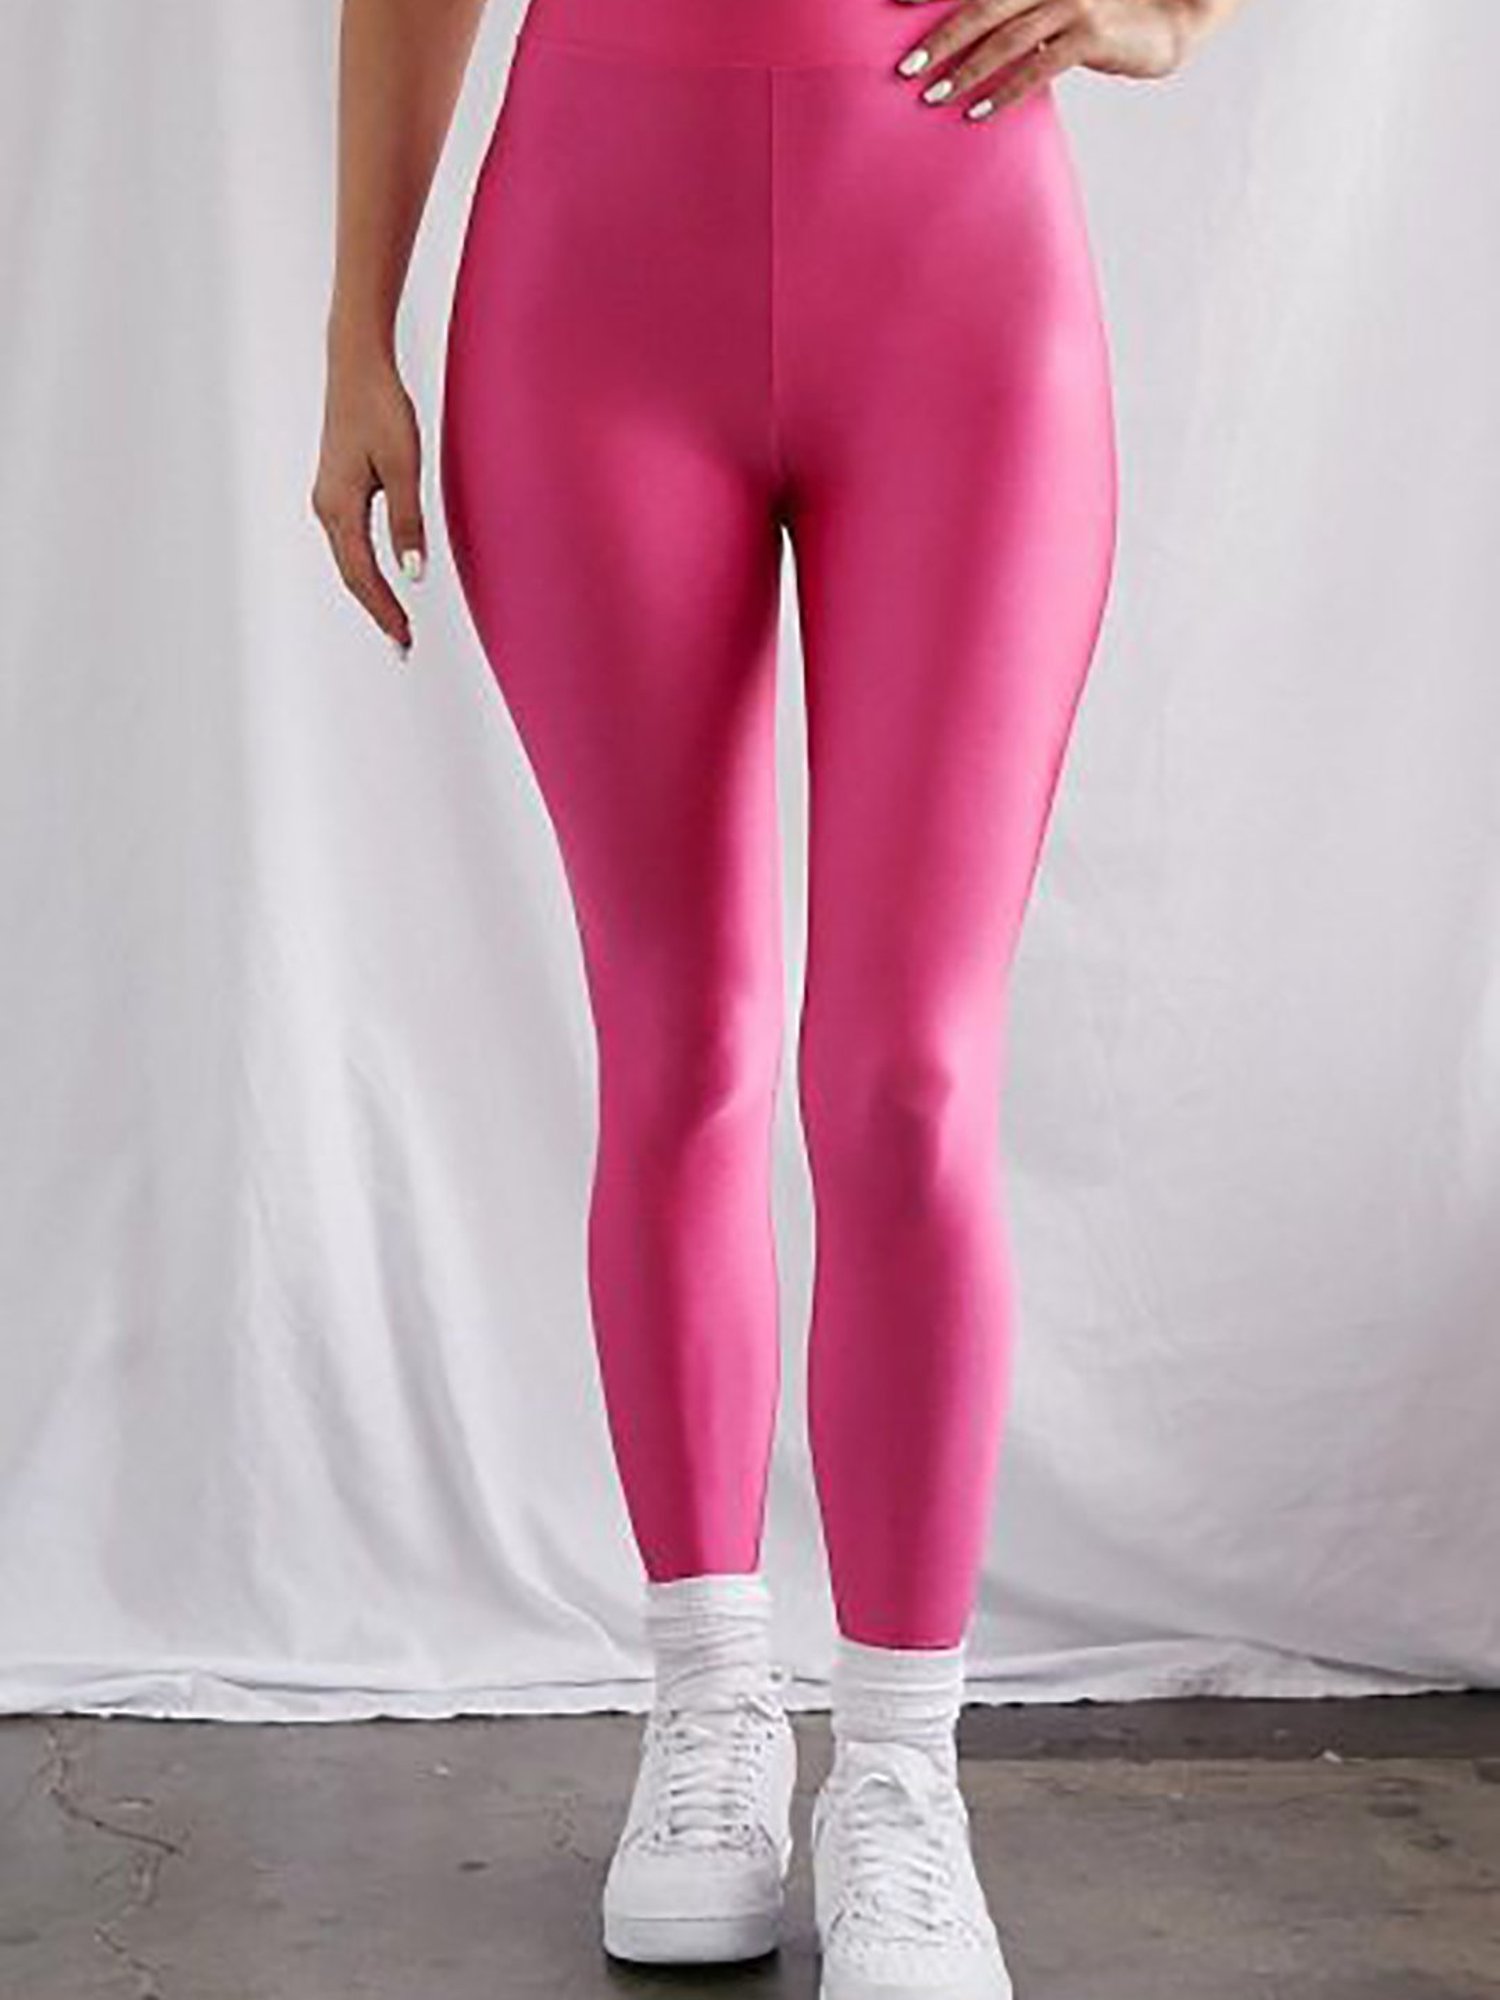 Women Push Up Anti-Cellulite Yoga Pants Ruched High Waist Tik Tok Leggings  Sport | eBay